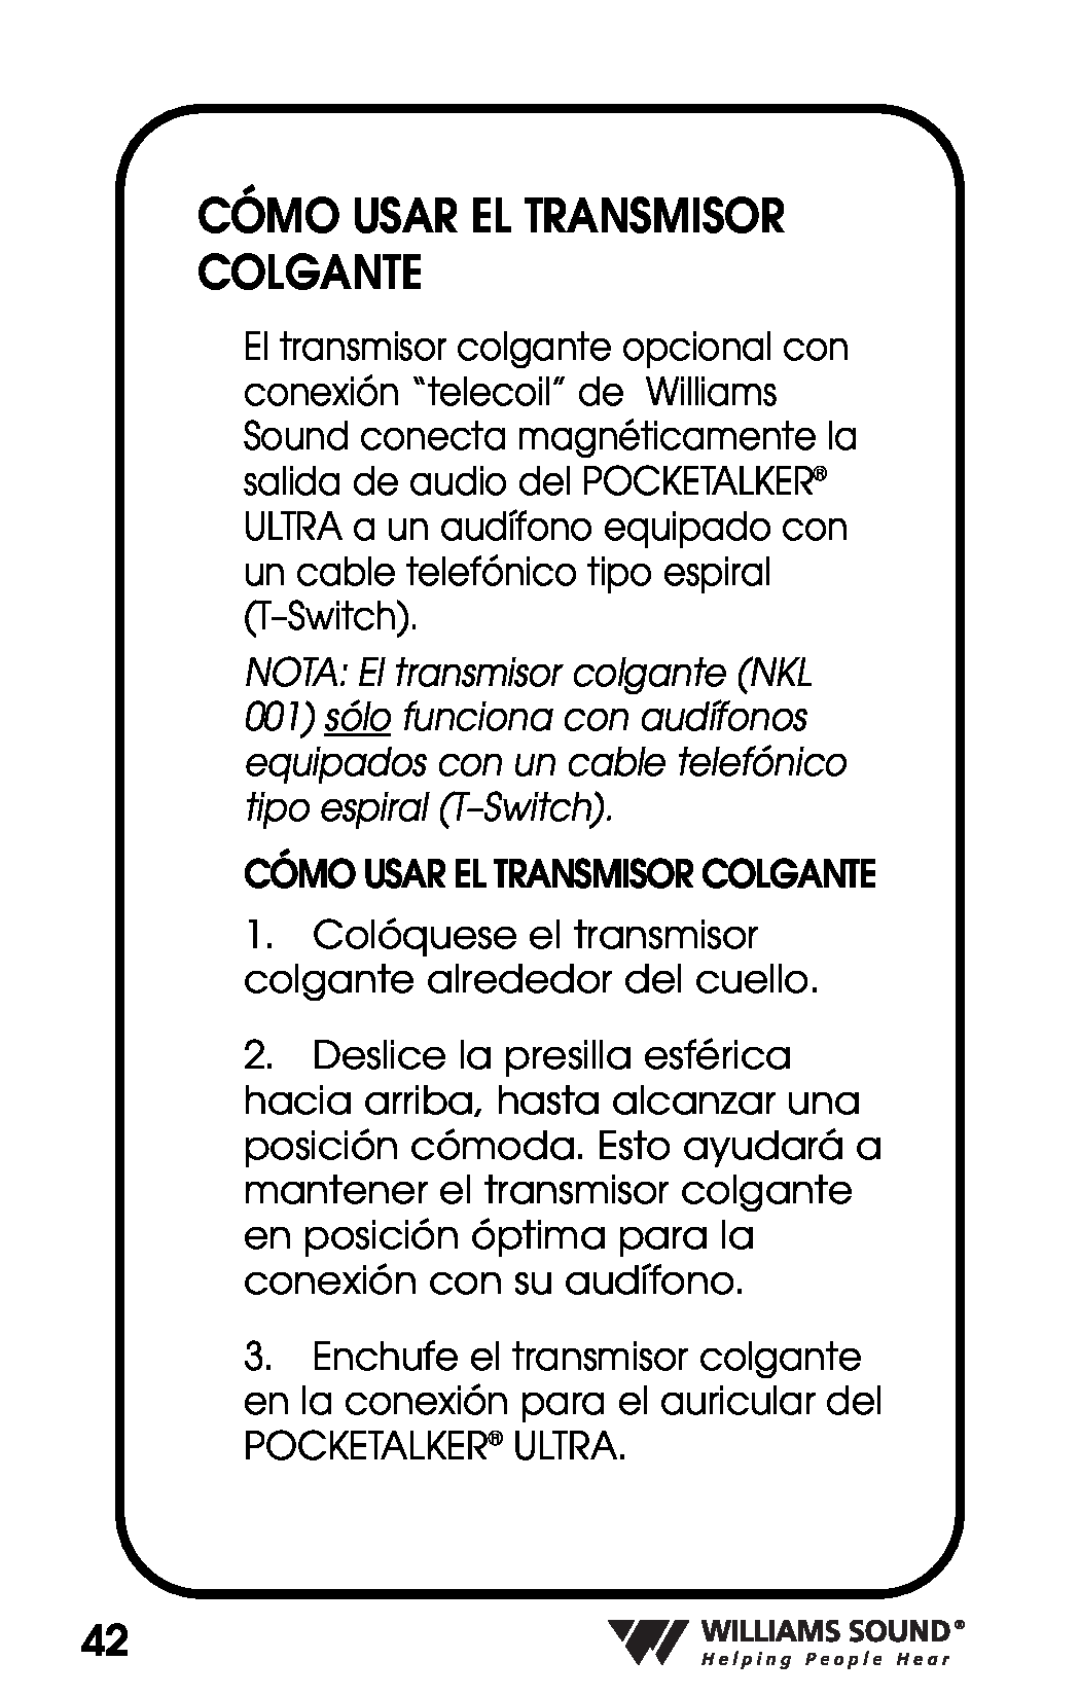 Williams Sound PKT D1 manual Cómo Usar El Transmisor Colgante, NOTA El transmisor colgante NKL 